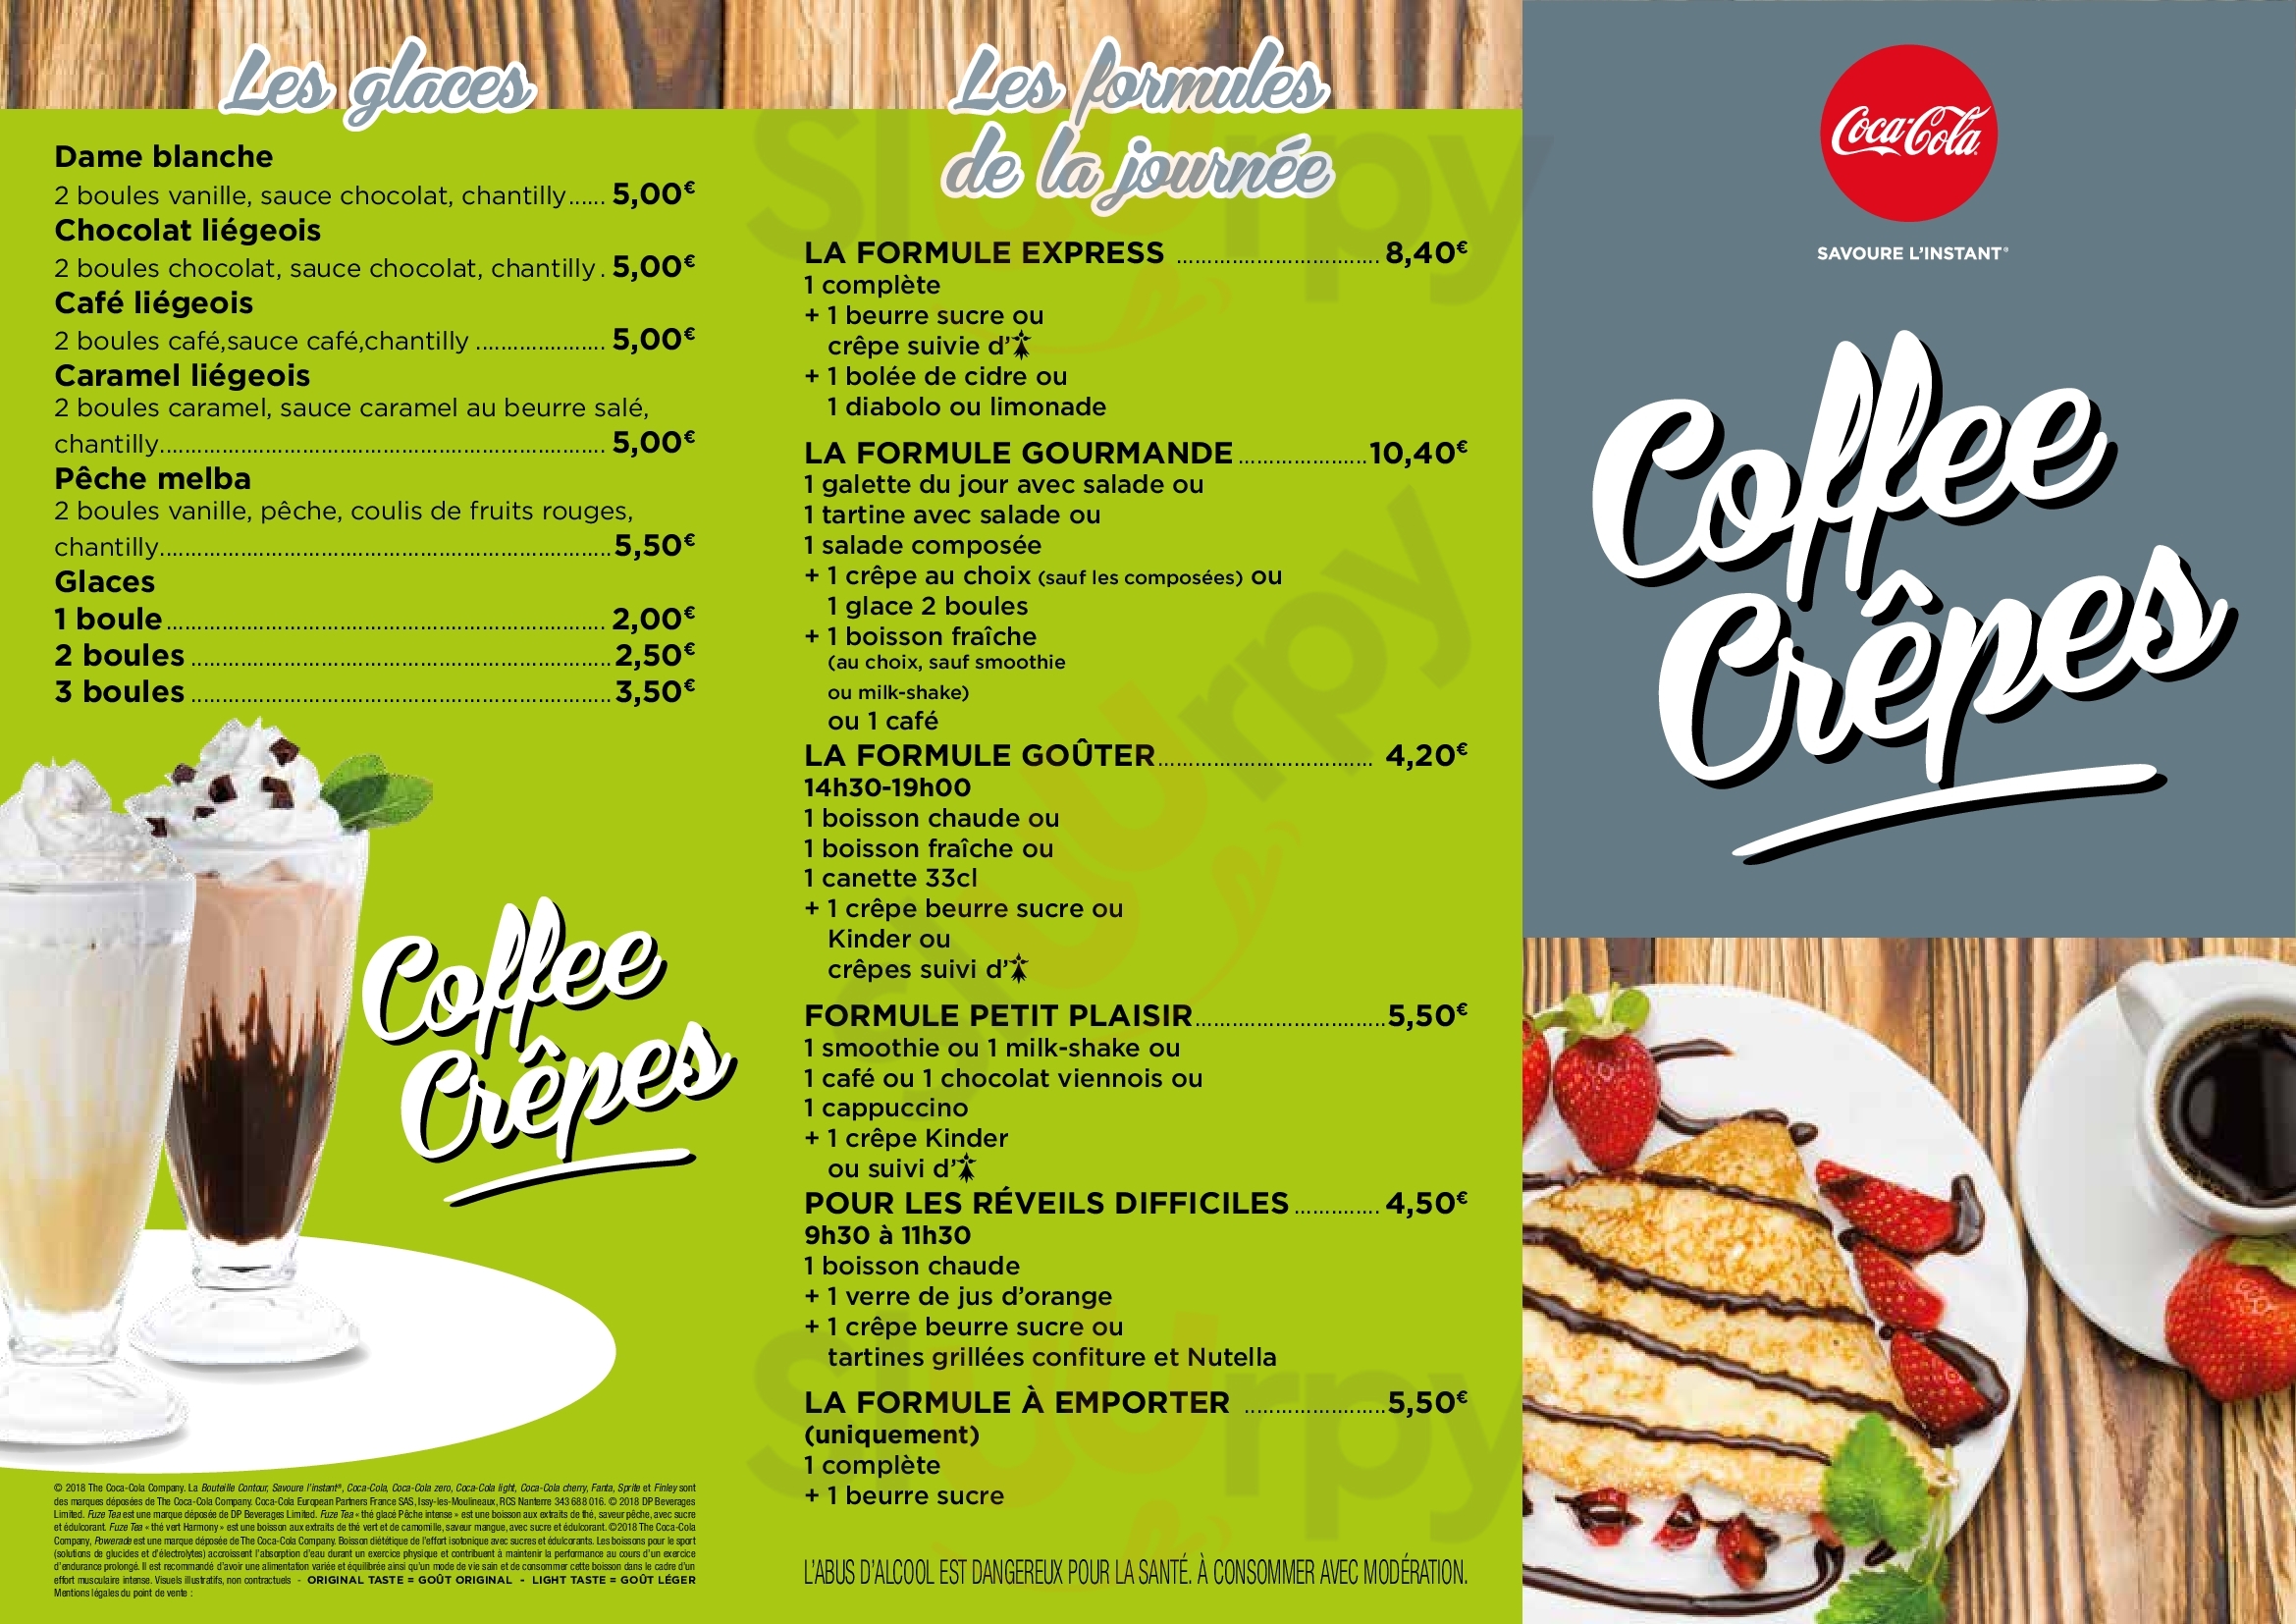 Coffee Crepes Rennes Menu - 1